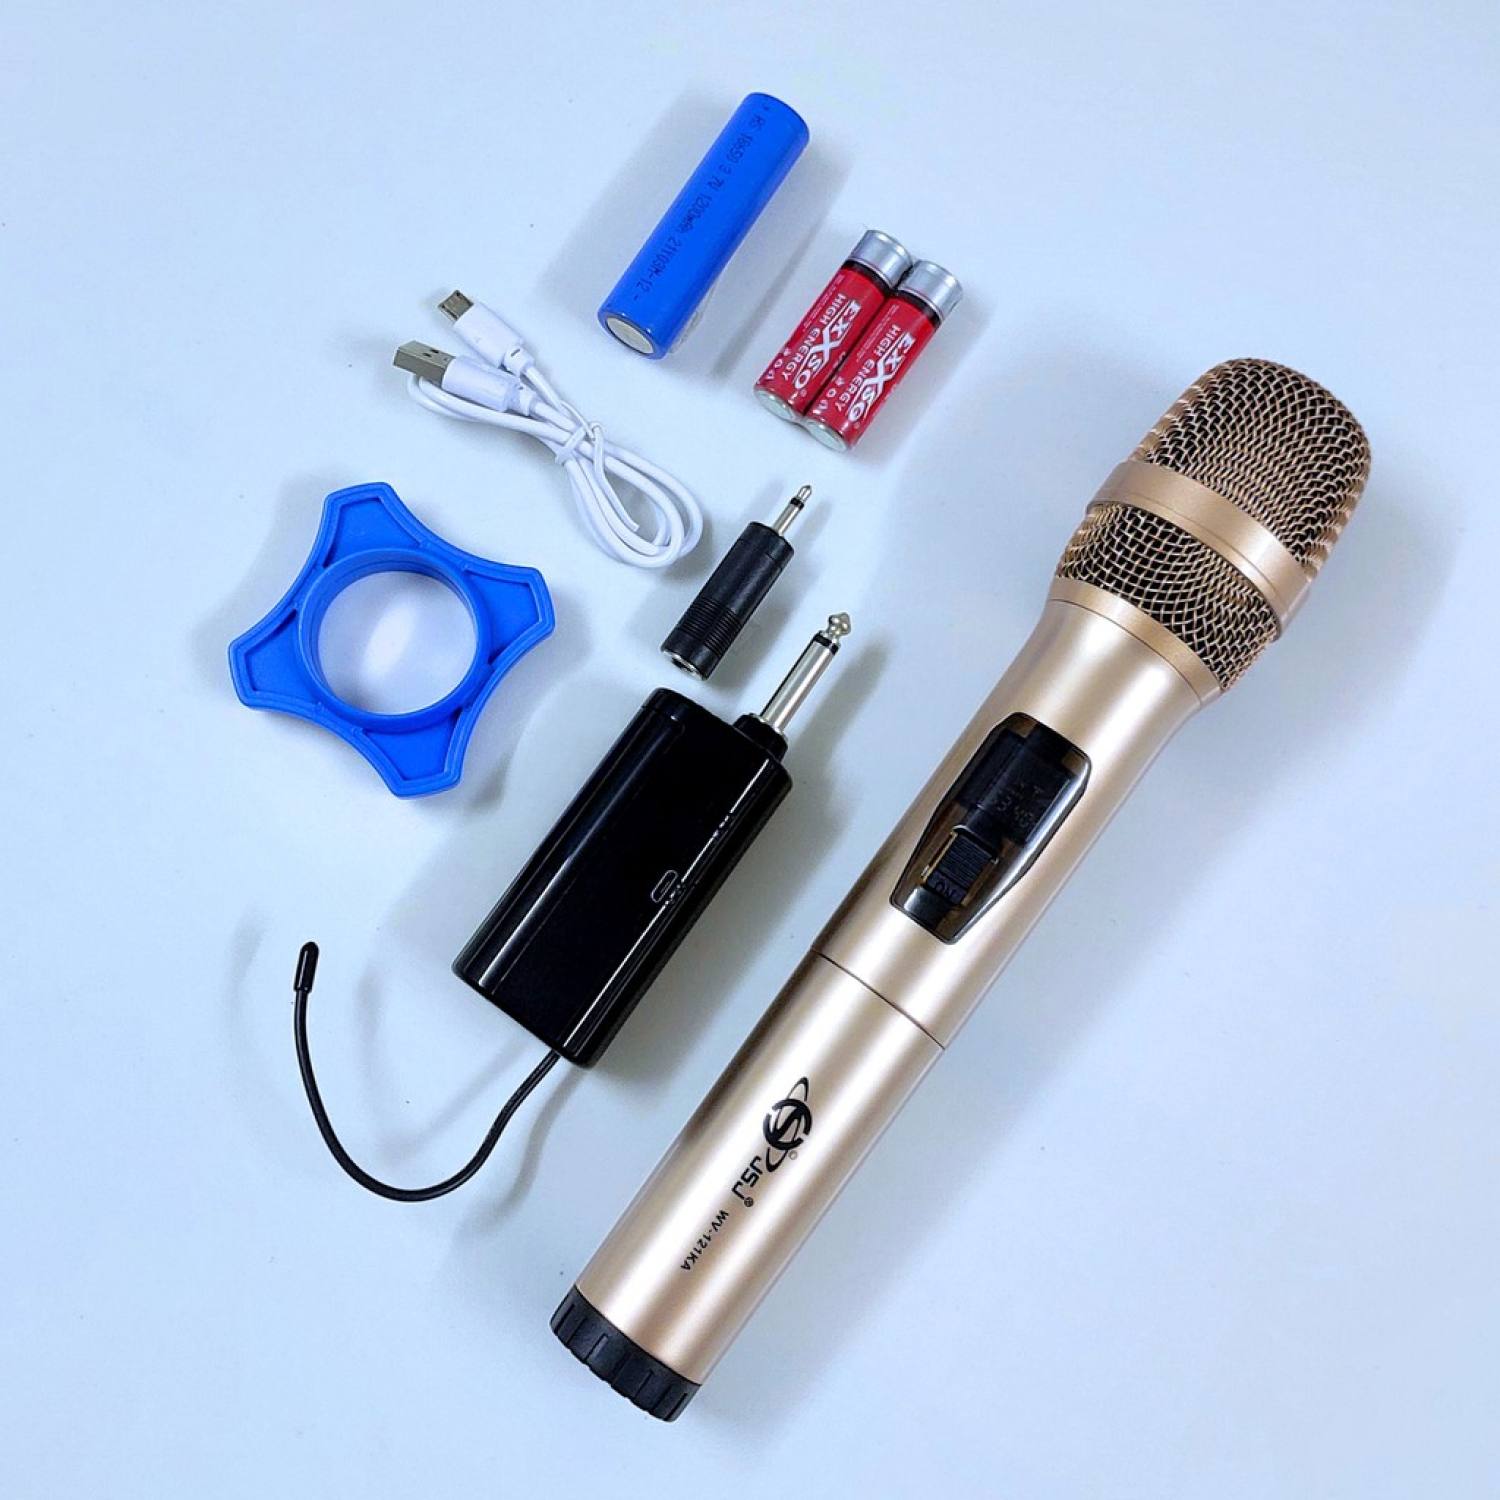 Mẫu Mới Micro karaoke không dây cao cấp JSJ-W121 tích hợp màn hình led chuyên